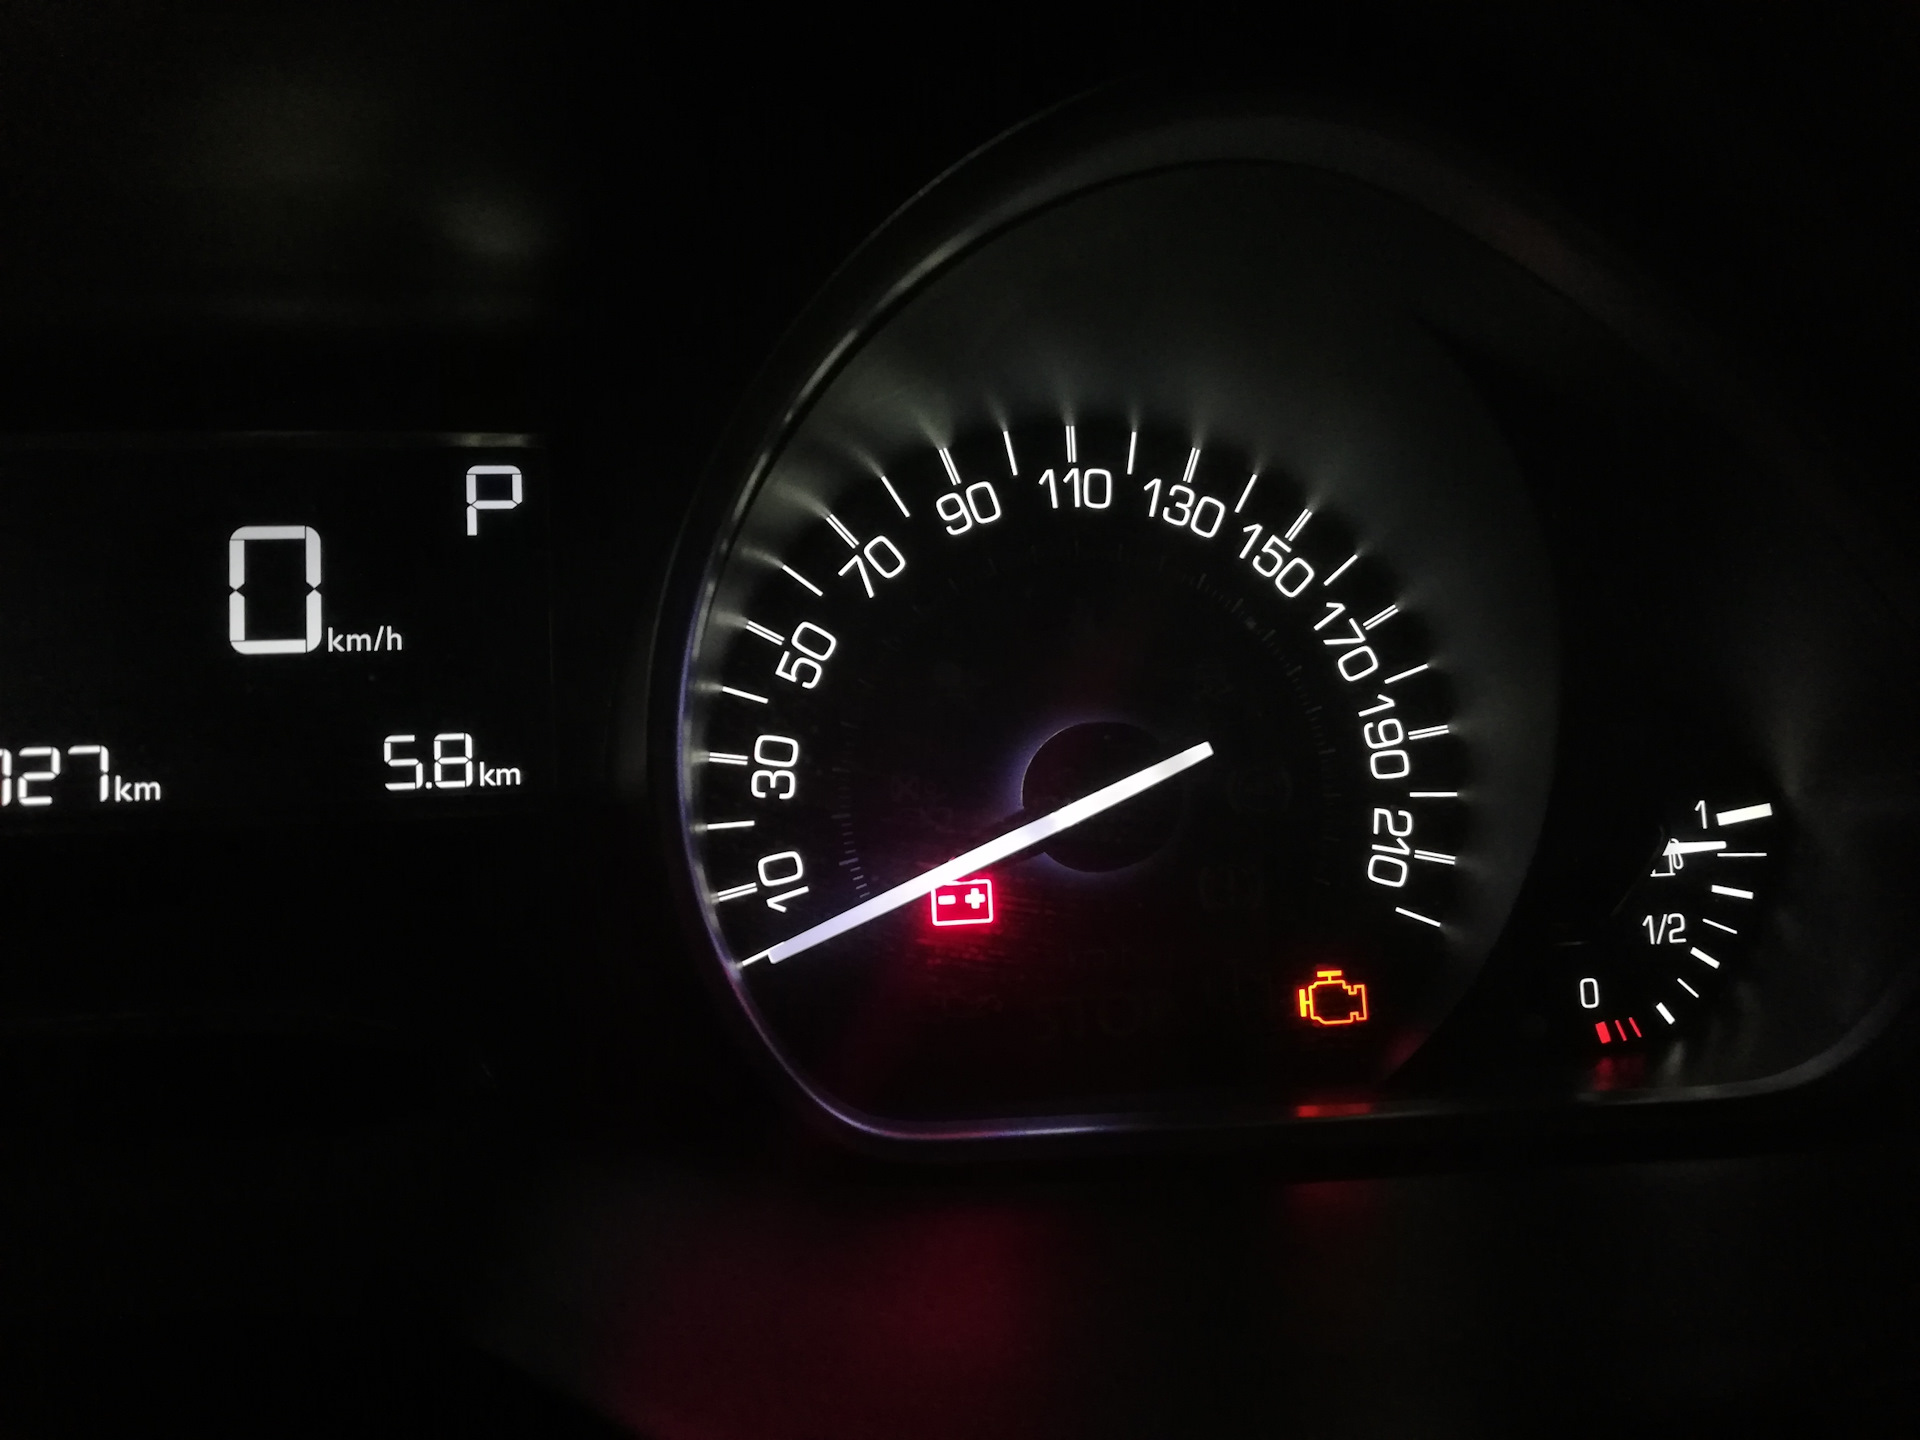 Ниссан полный бак. Полный бак акцент. Пежо 2008 показатель бензина. Peugeot 2008 контрольной лампой. Полный бак бензина в Лексусе.